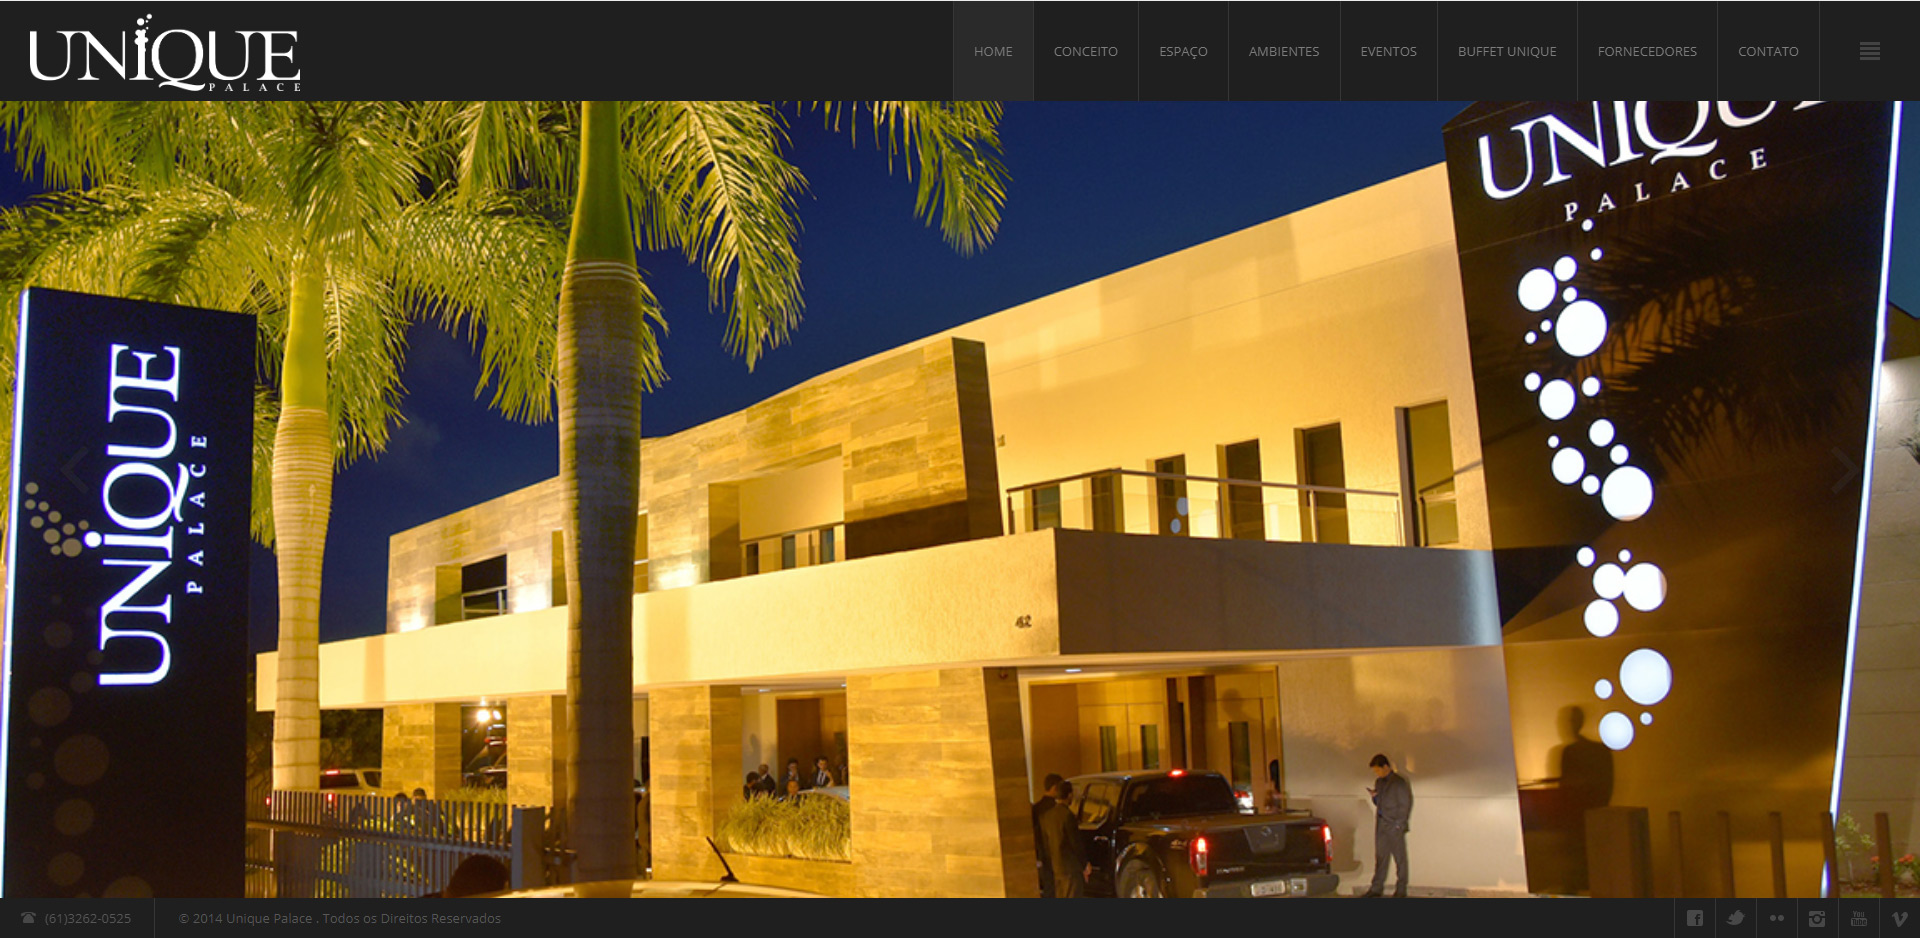 Modernização website Centro de Eventos Unique Palace e Buffet. Um dos mais importantes buffets de Brasília, merecia um novo posicionamento para sua marca, graças ao marketing digital gastronômico.